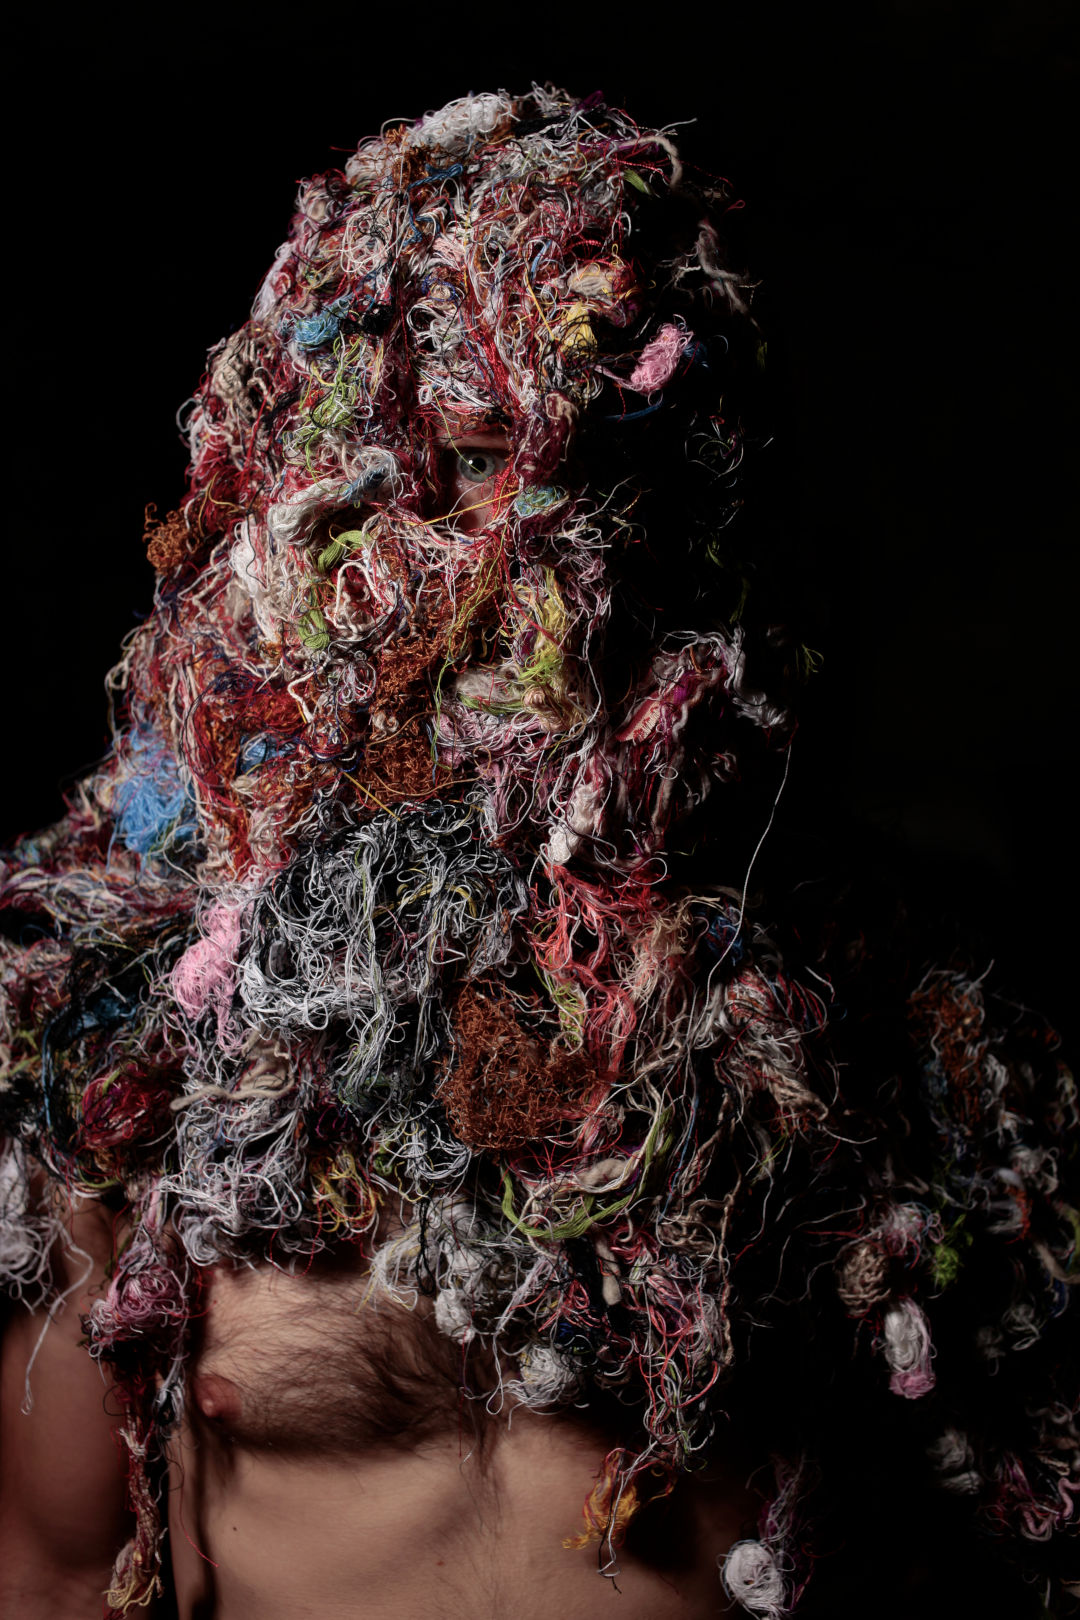 waste threads mask handcrafted by Biusch